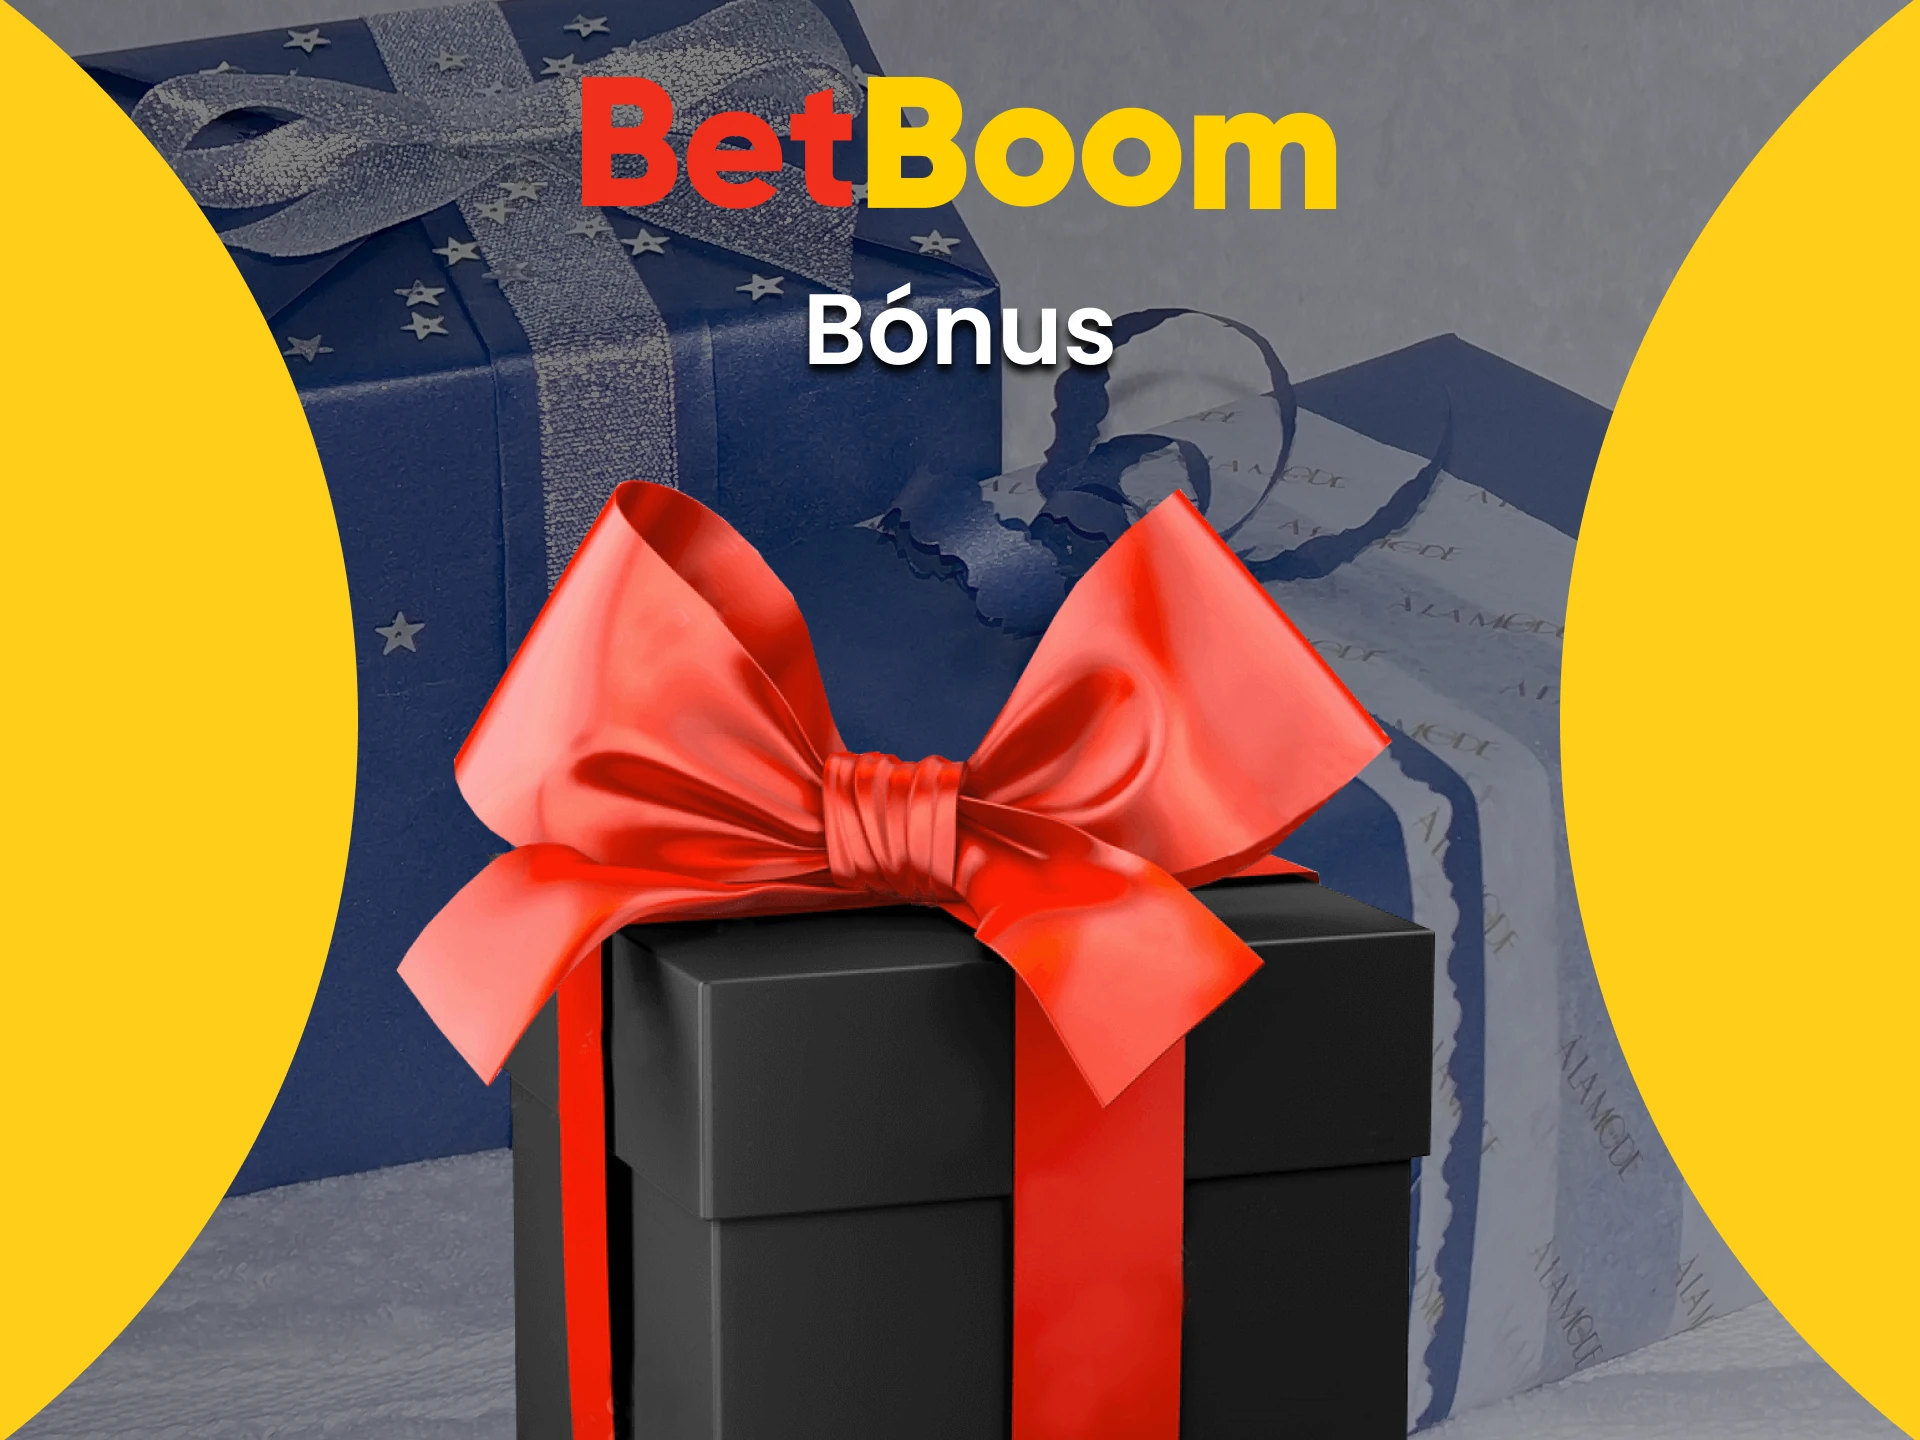 Betboom oferece bônus para apostas em eSports.